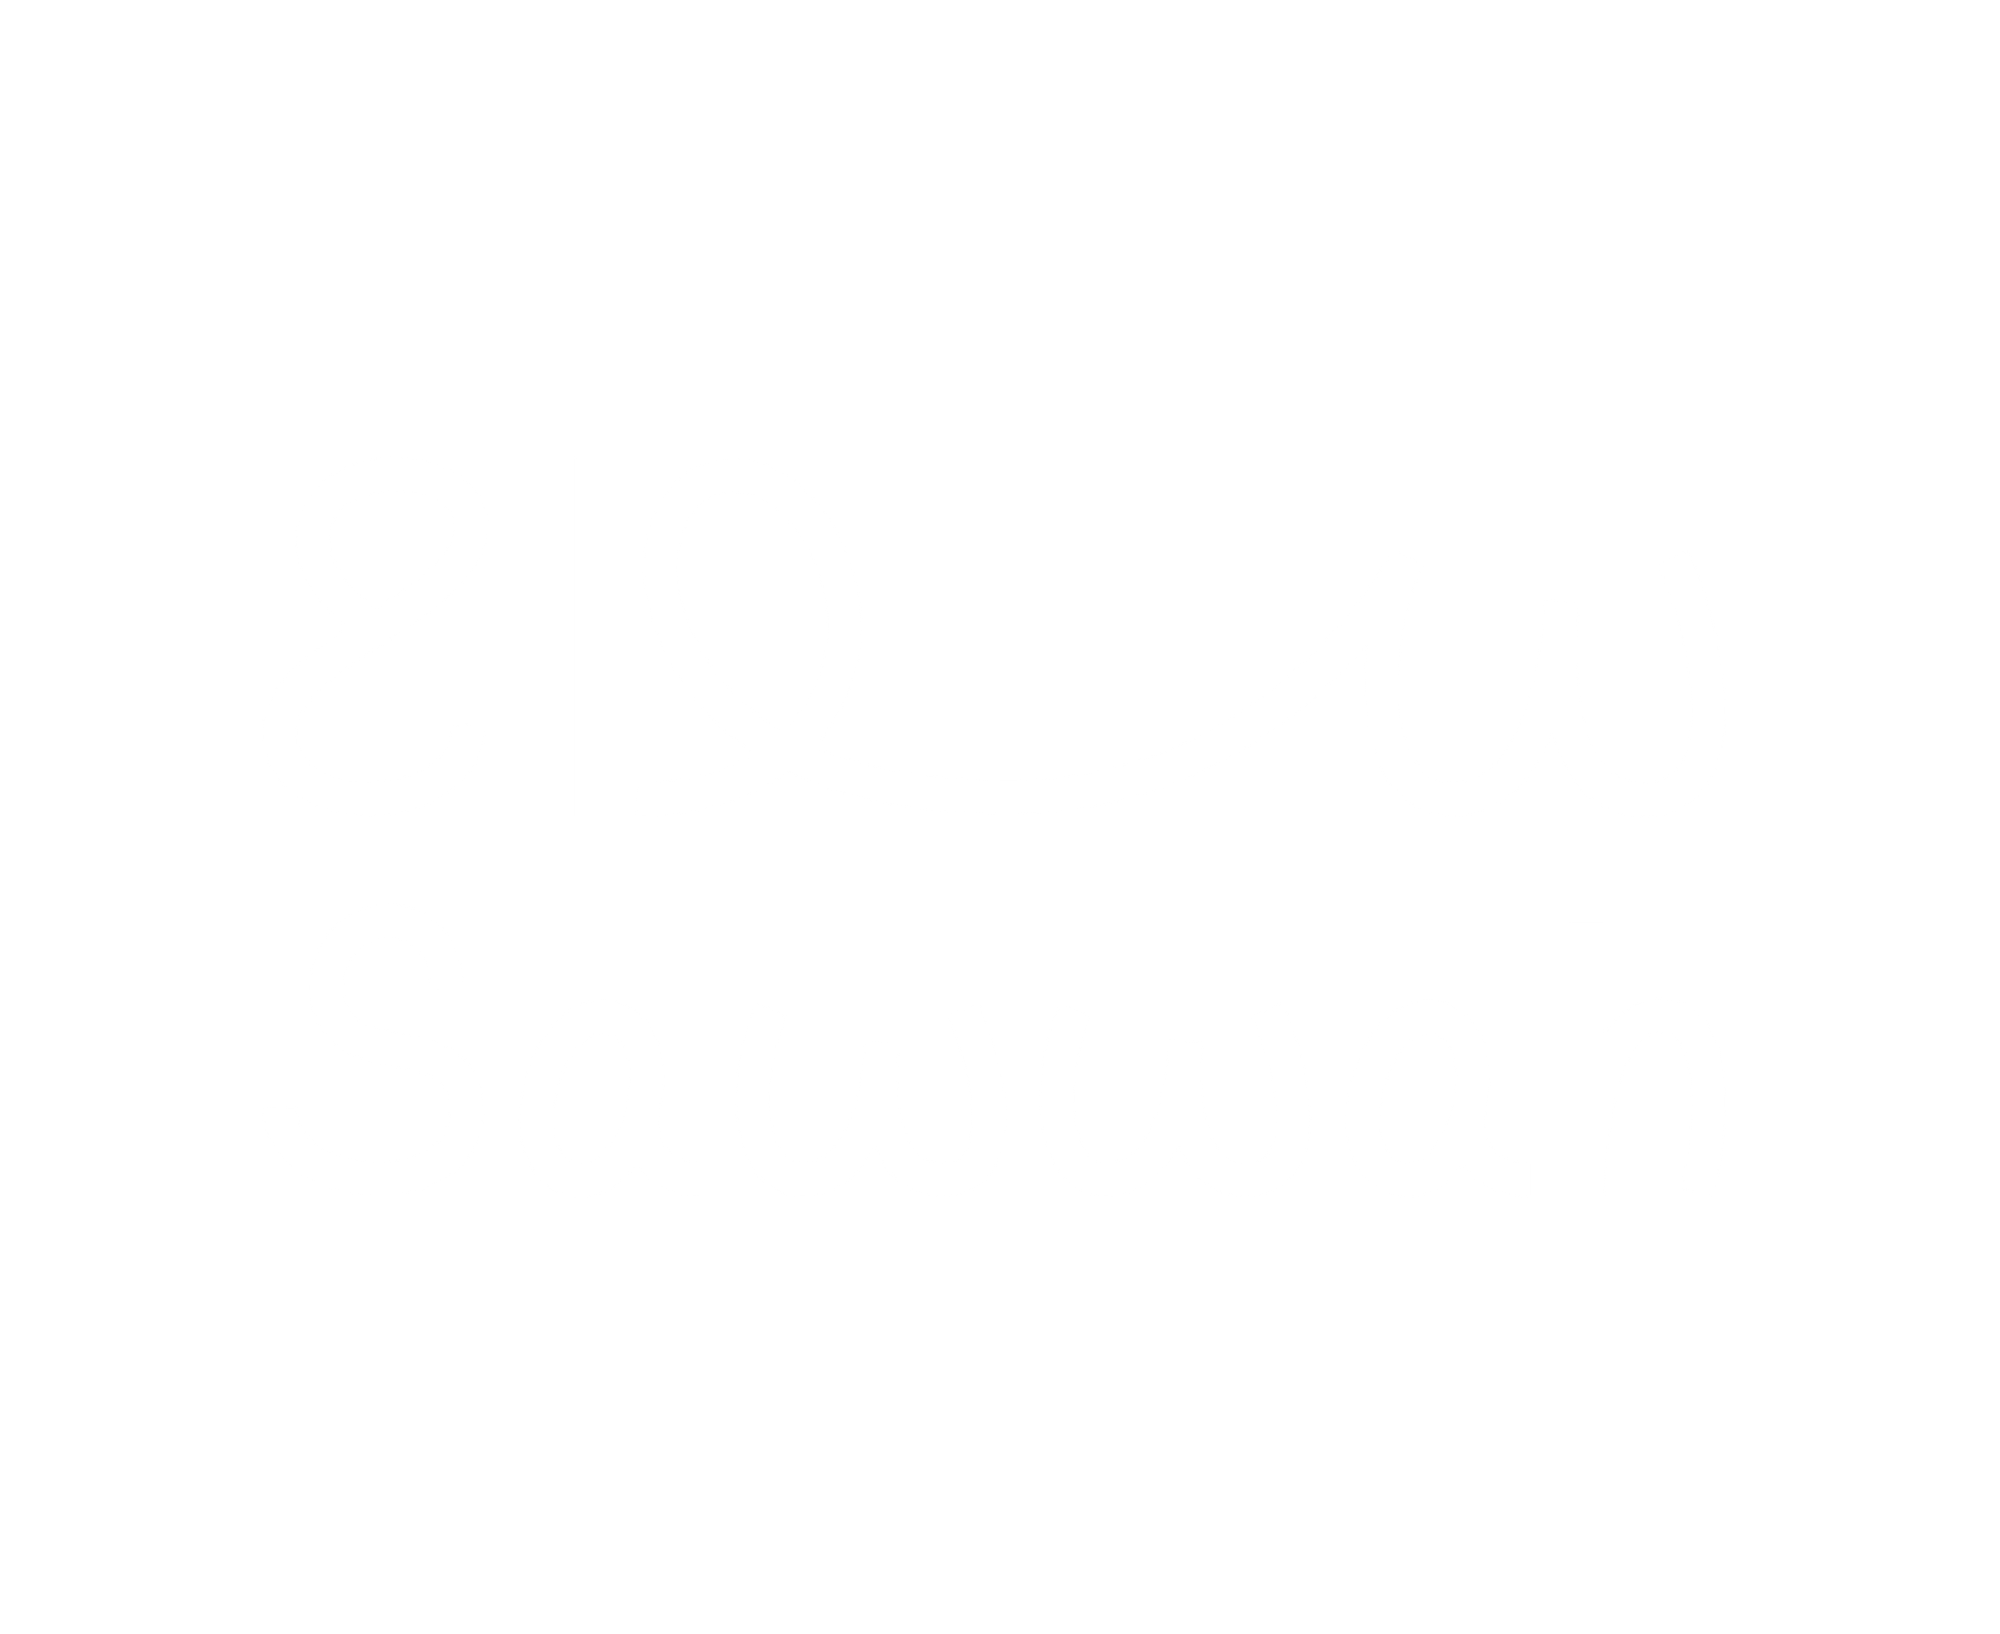 Sawwah